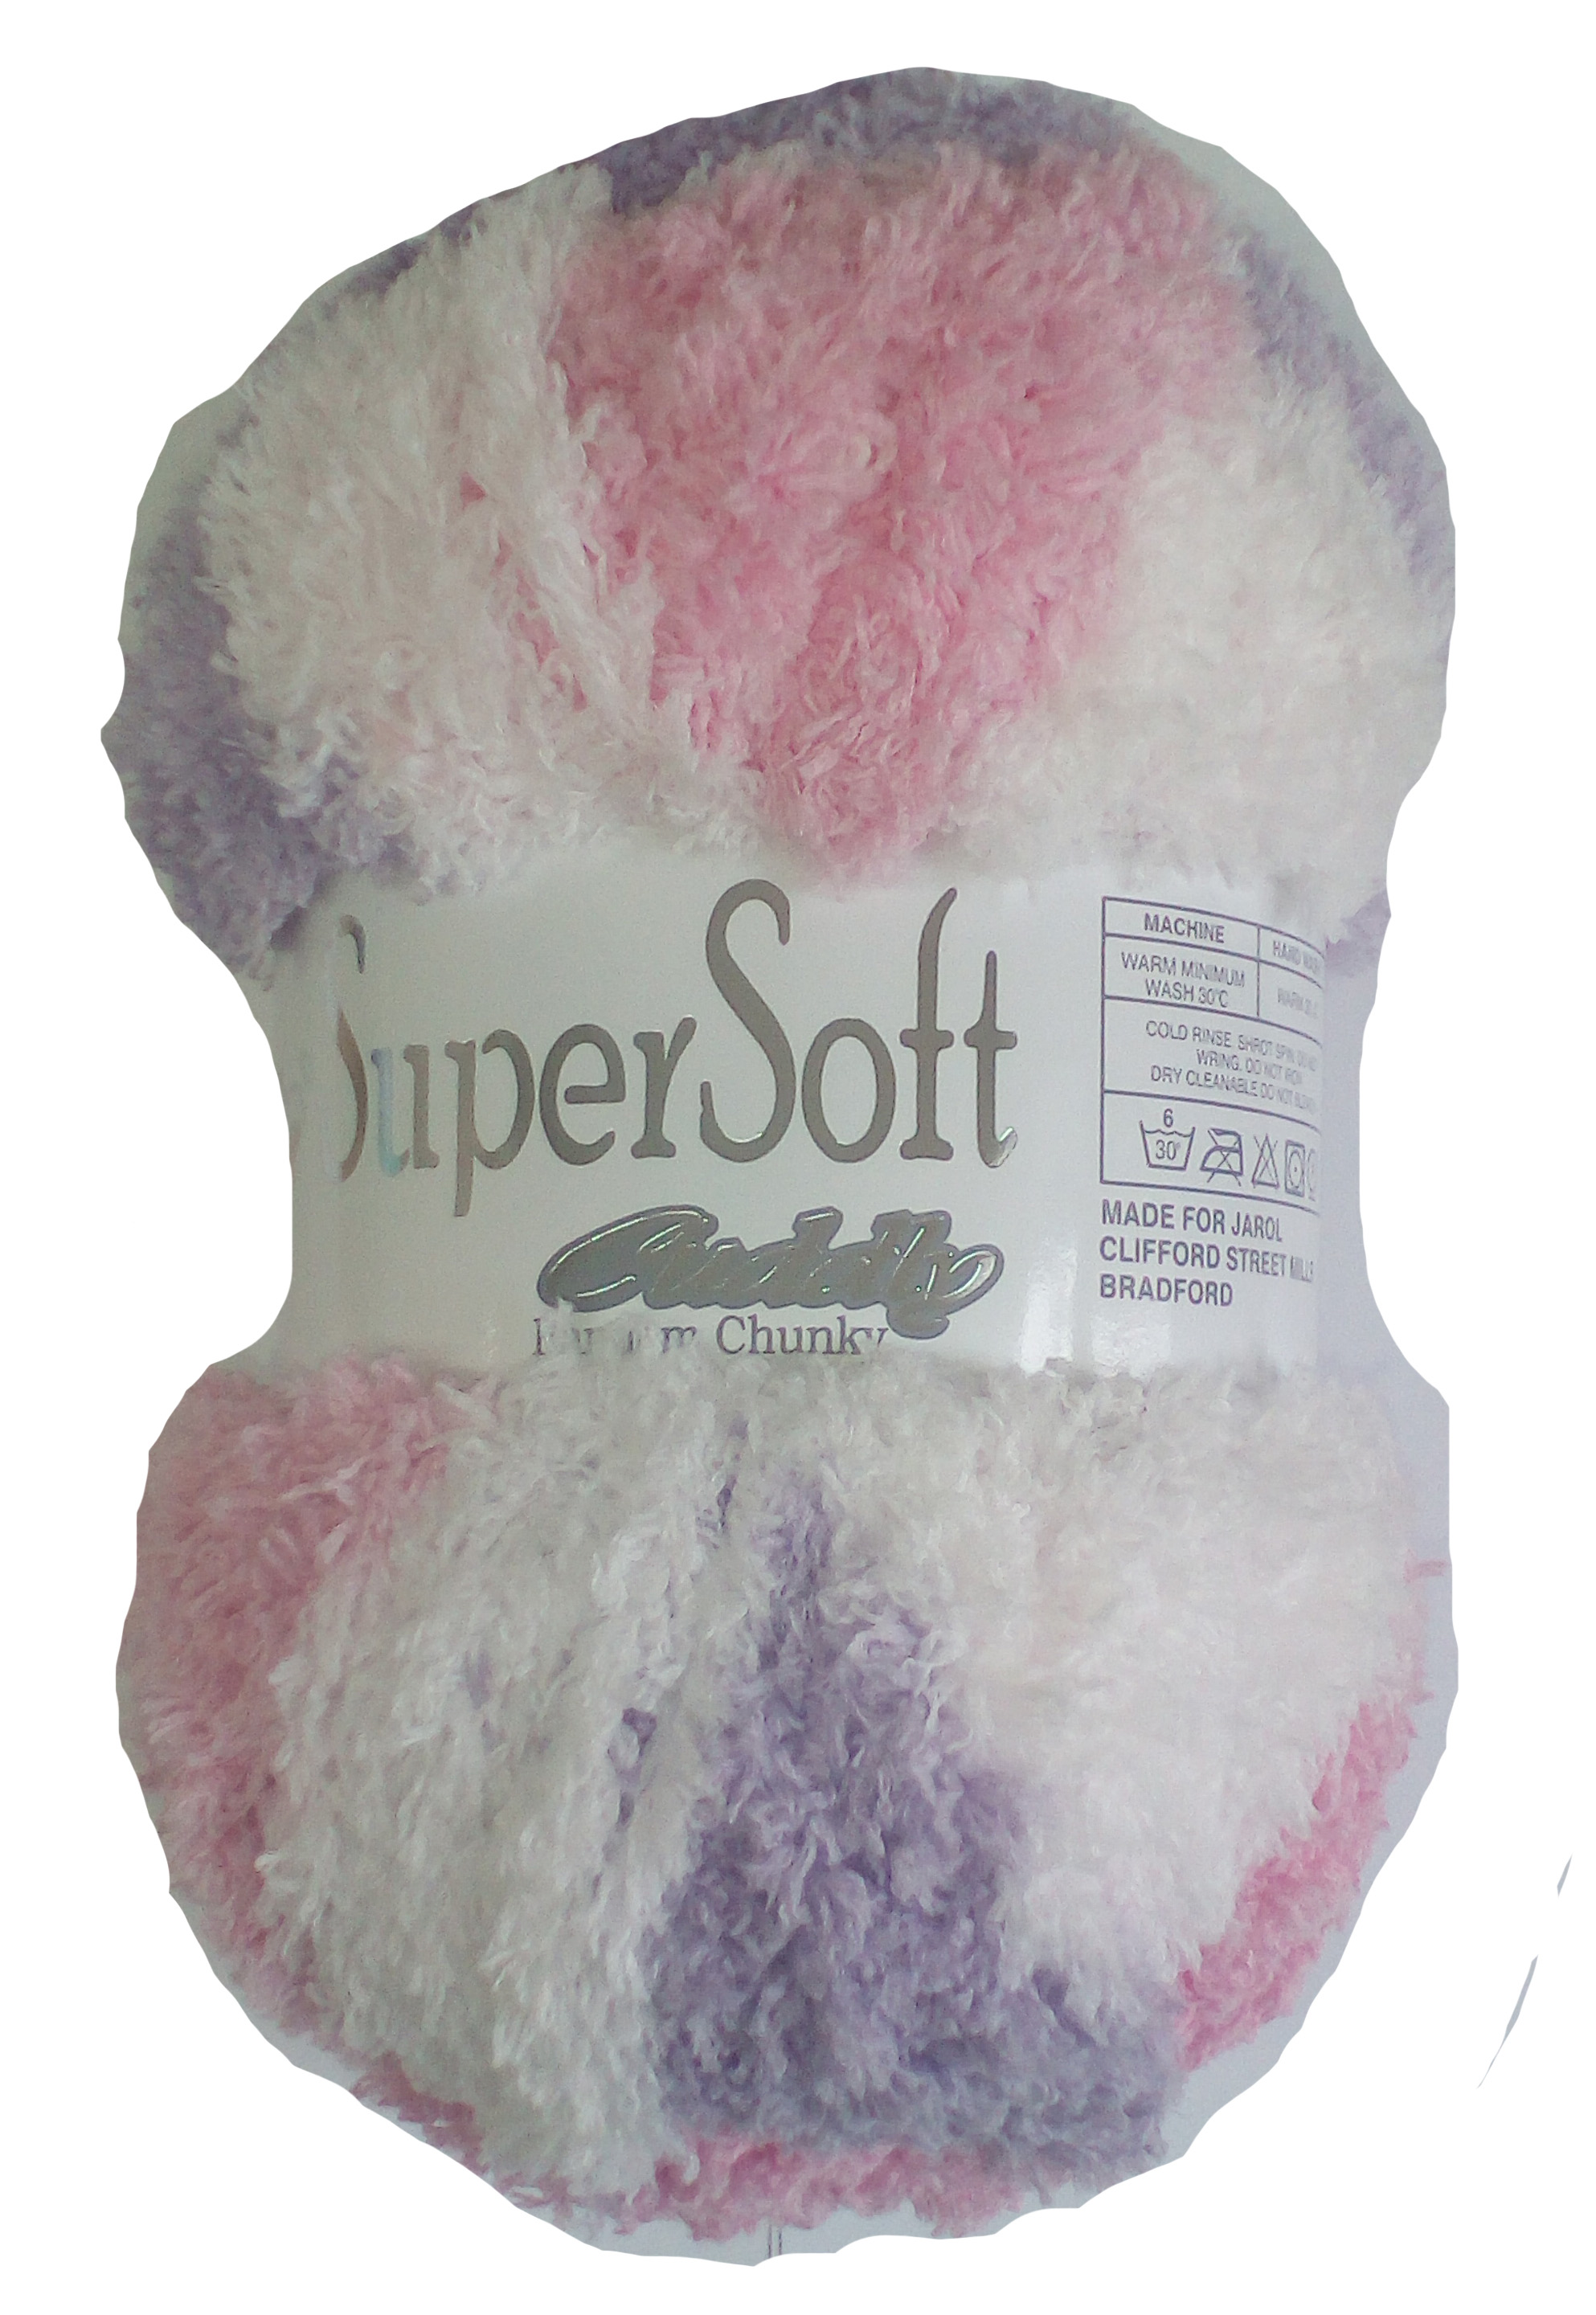 Super Soft Cuddly Yarn Cassis